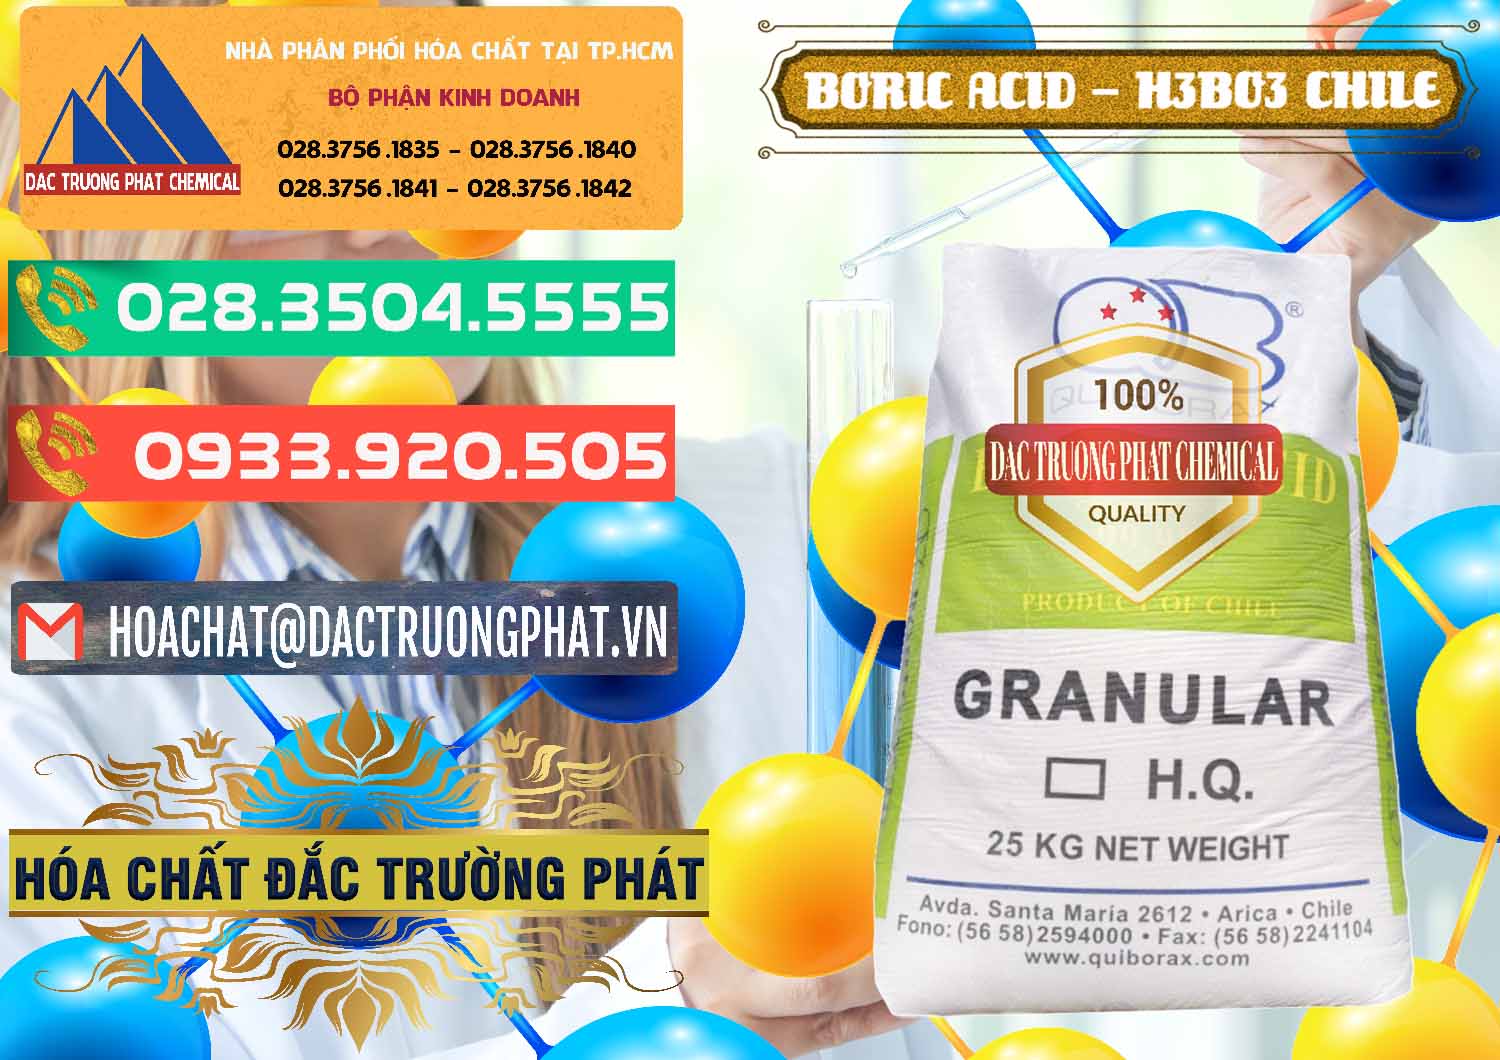 Công ty bán _ cung cấp Acid Boric – Axit Boric H3BO3 99% Quiborax Chile - 0281 - Công ty cung cấp và phân phối hóa chất tại TP.HCM - congtyhoachat.com.vn